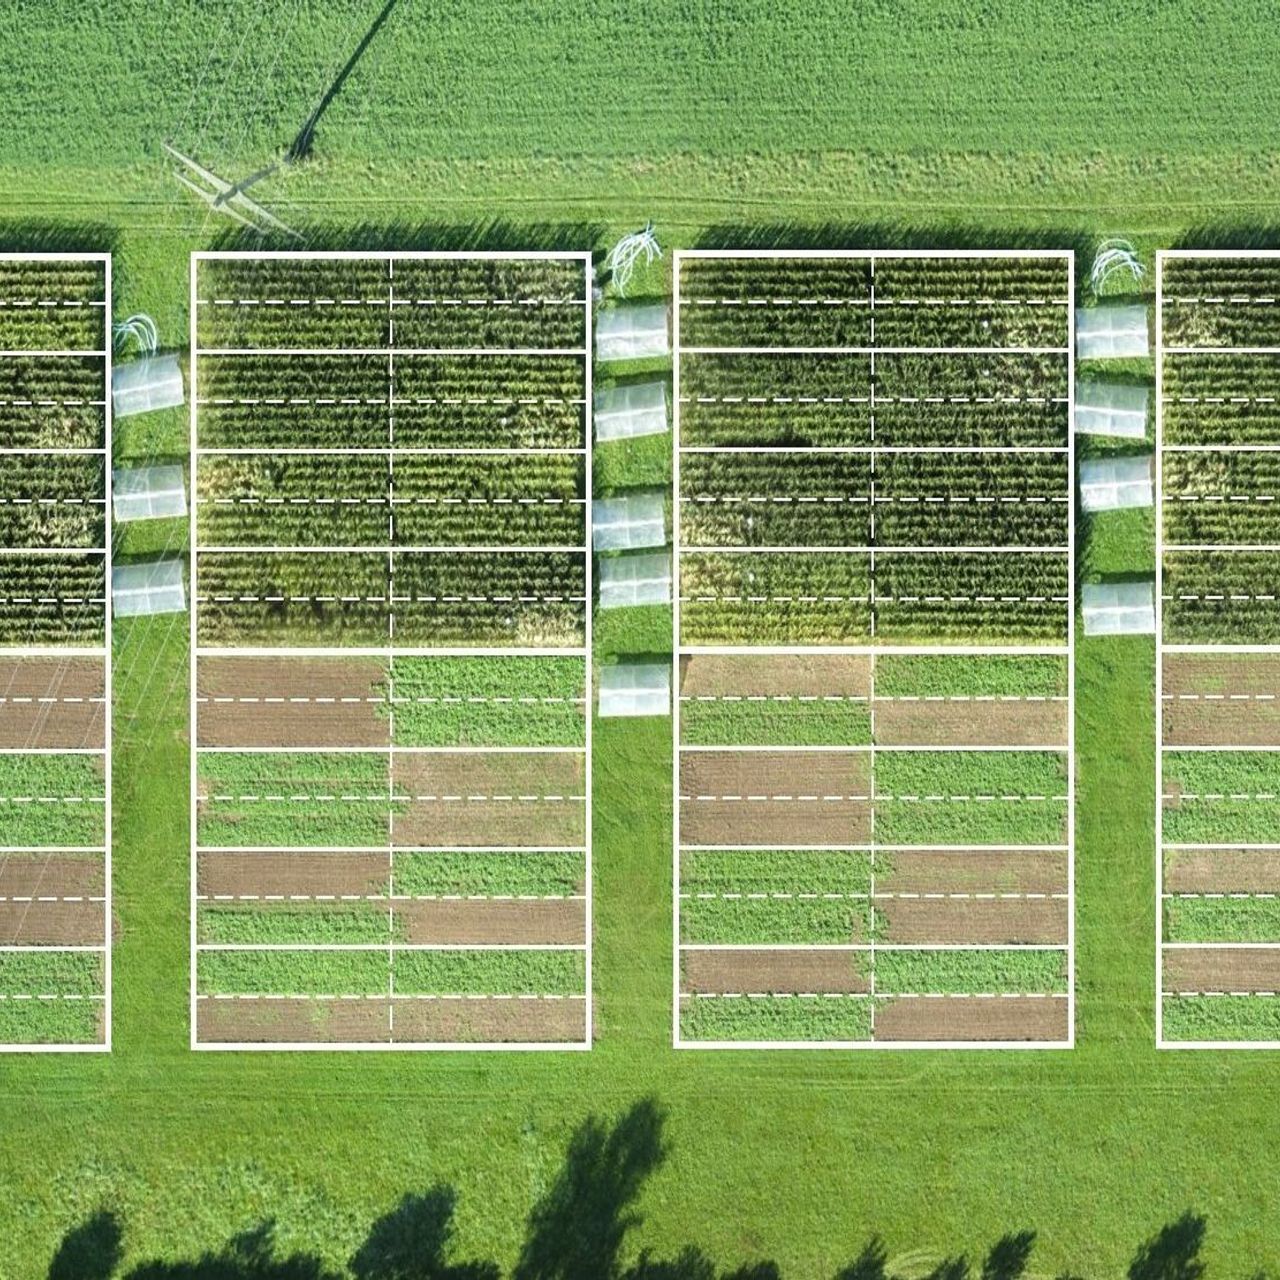 Aģentūras Agroscope lauksaimniecības sistēmu un augsnes apstrādes eksperimentā Cīrihē tiek novērtēta bioloģiskās, saglabājošās un konvencionālās lauksaimniecības ietekme uz augu ražu un plašu ekosistēmu pakalpojumu klāstu: tika pārbaudīts arī tas, kā dažādas lauksaimniecības metodes reaģē uz simulētu sausumu, kas tiek radīts no plastmasas. ekrāni…